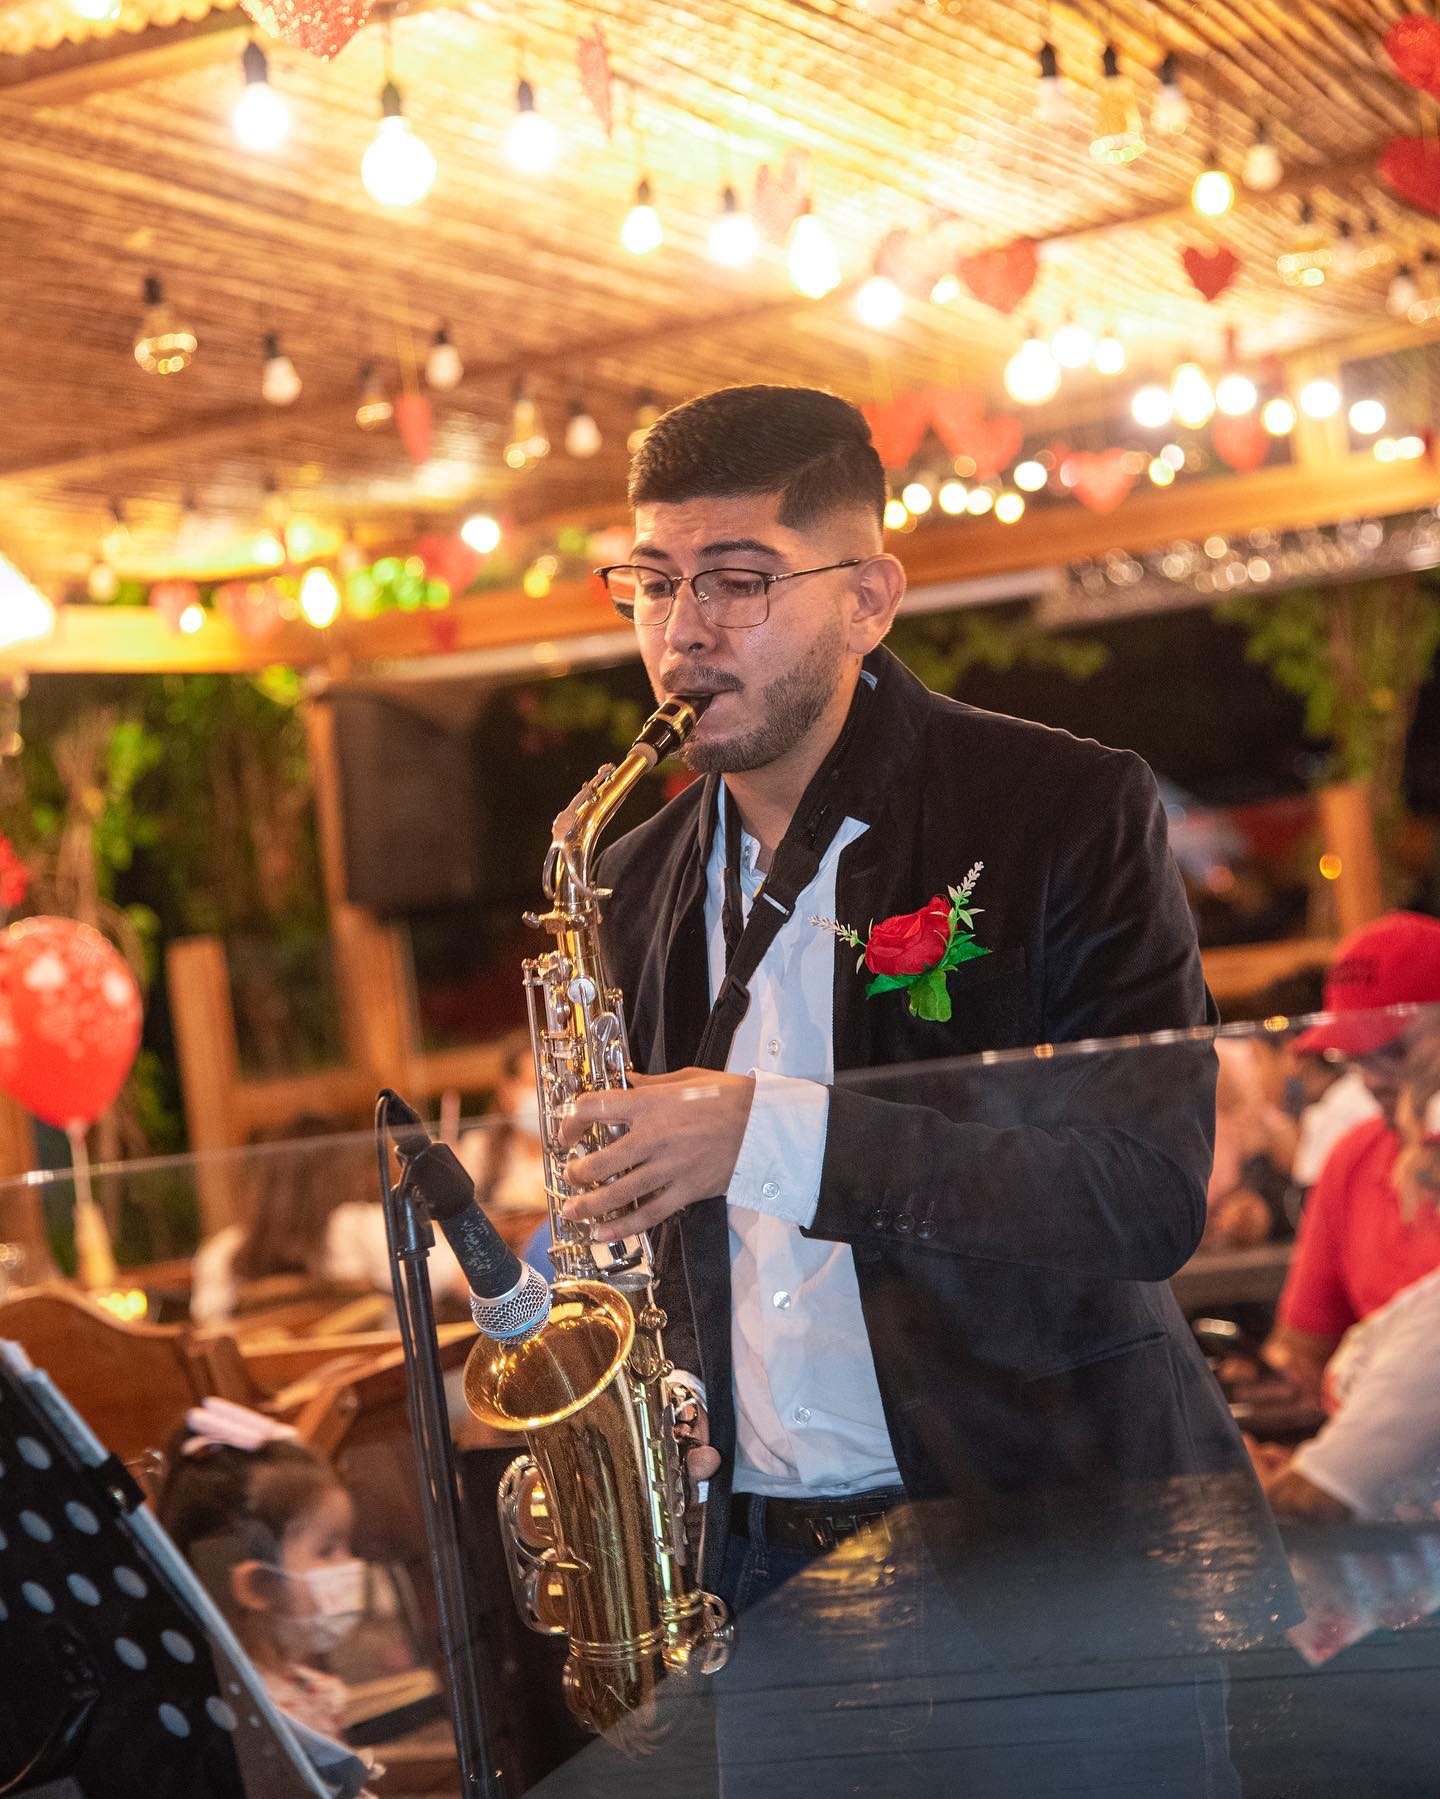 San Valentín en el restaurante campestre de San Gil. Disfrutando de una buena interpretación del saxofón.